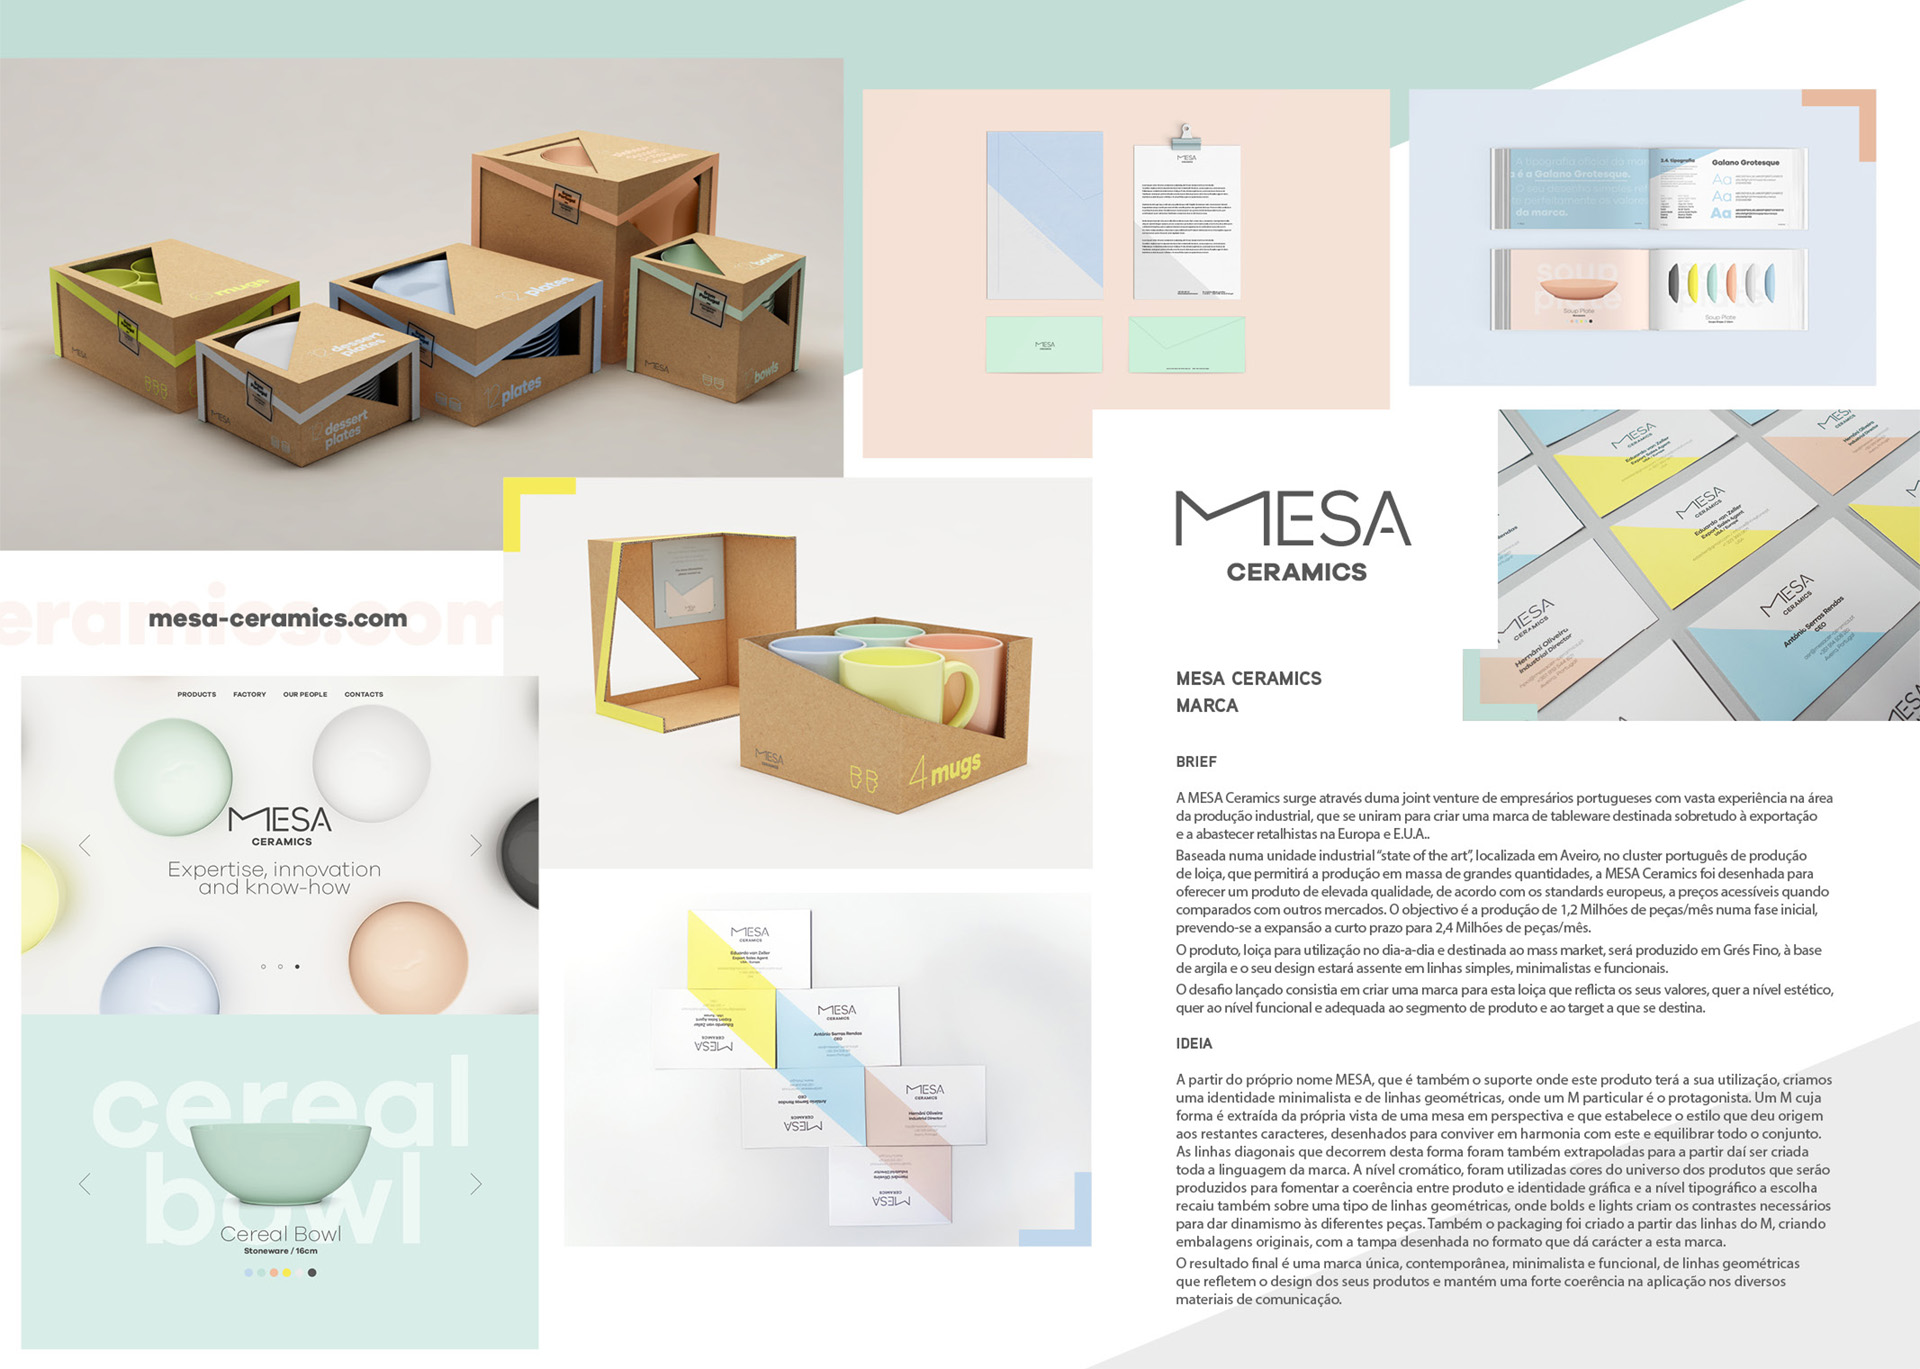 MESA Ceramics by FUEL Lisboa / Pedro Vilar - Creative Work